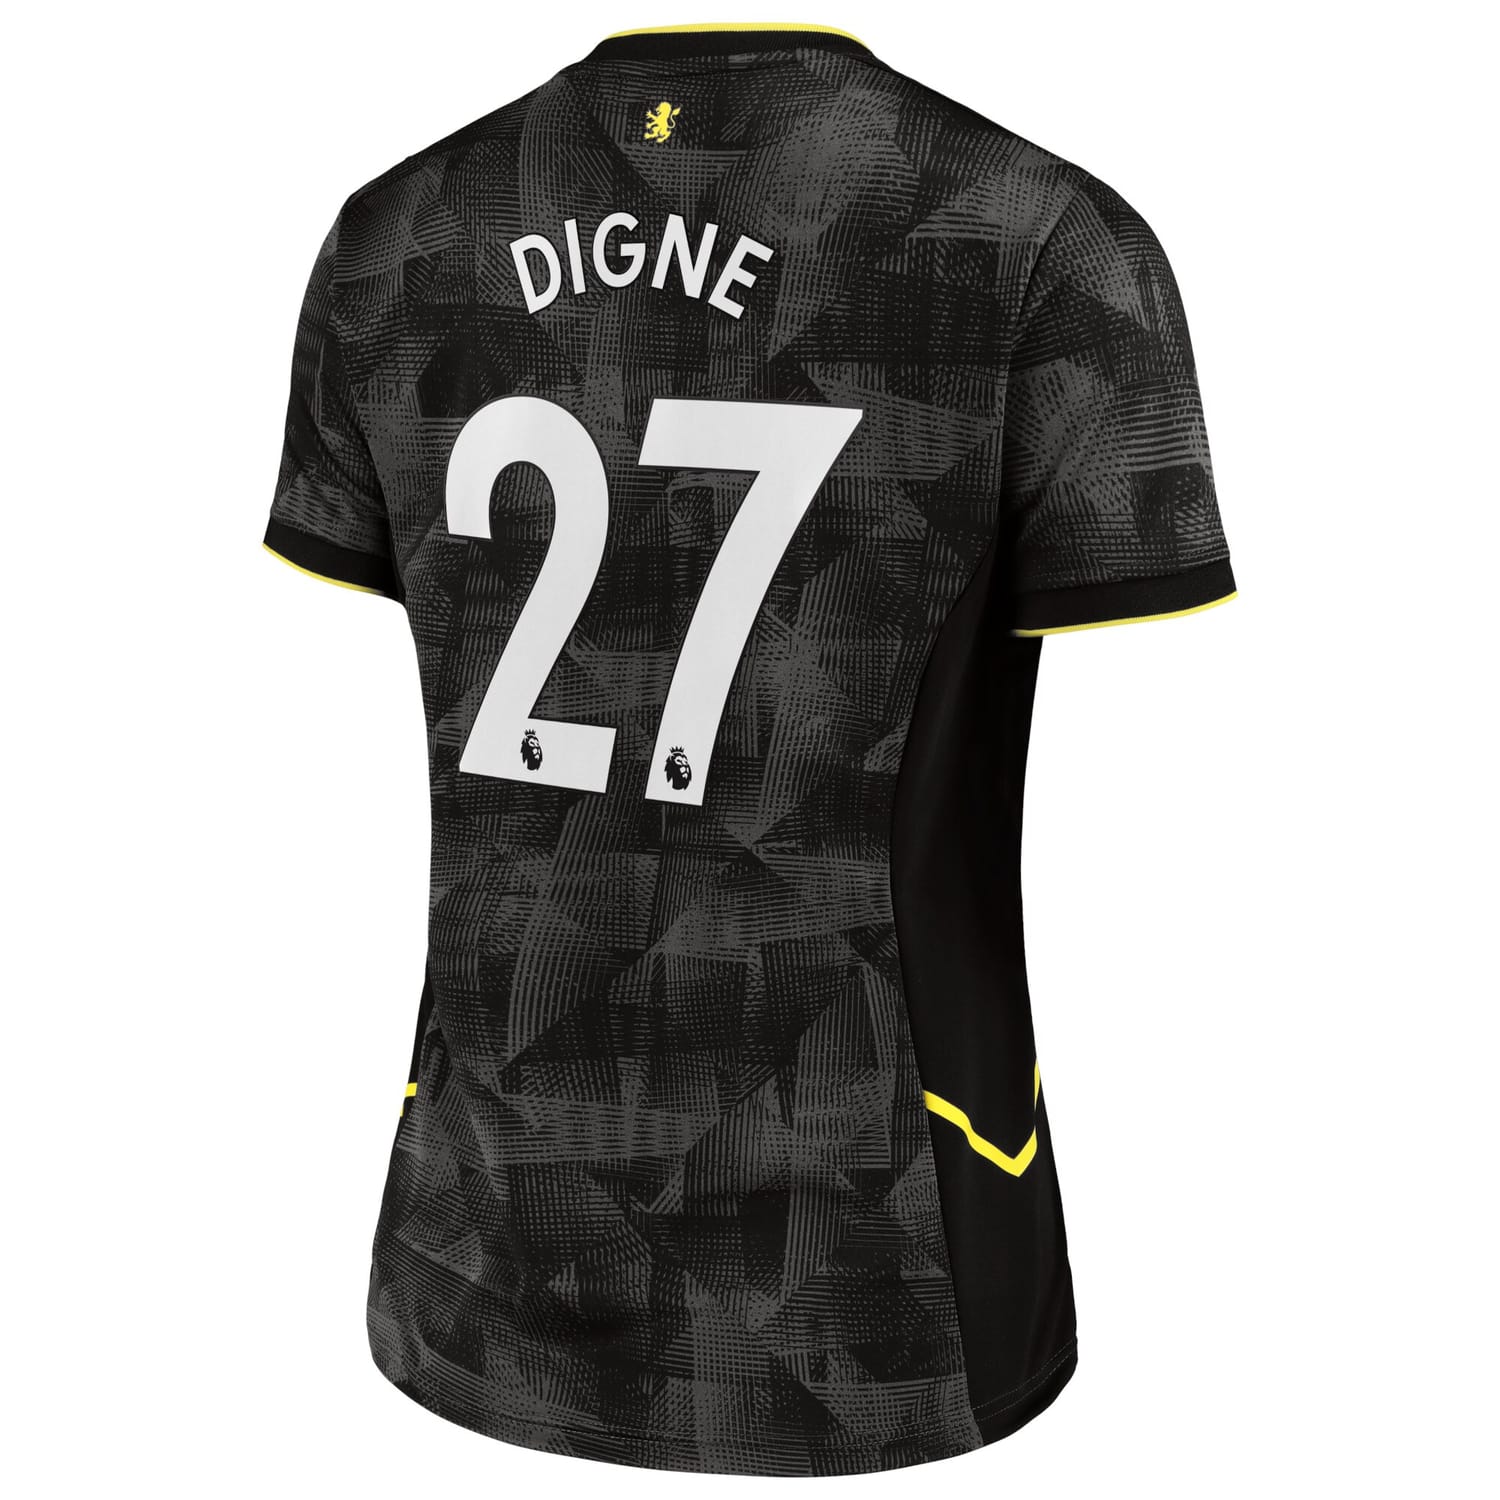 Premier League Aston Villa Third Jersey Shirt 2022-23 player Lucas Digne 27 printing for Women